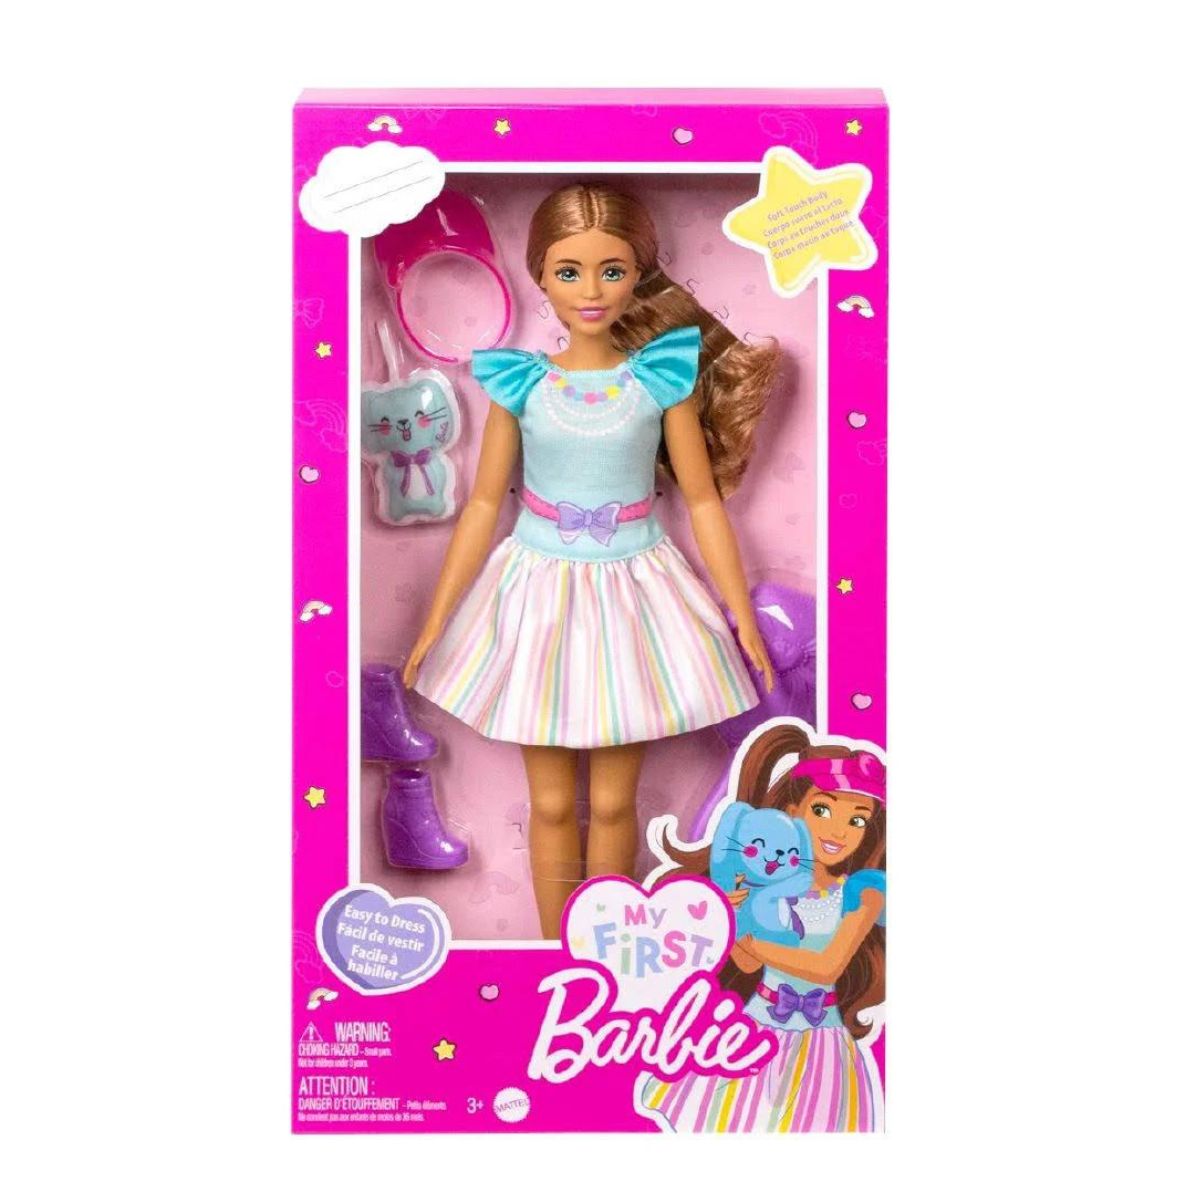 Boneca Barbie com Vestido Azul - Bumerang Brinquedos